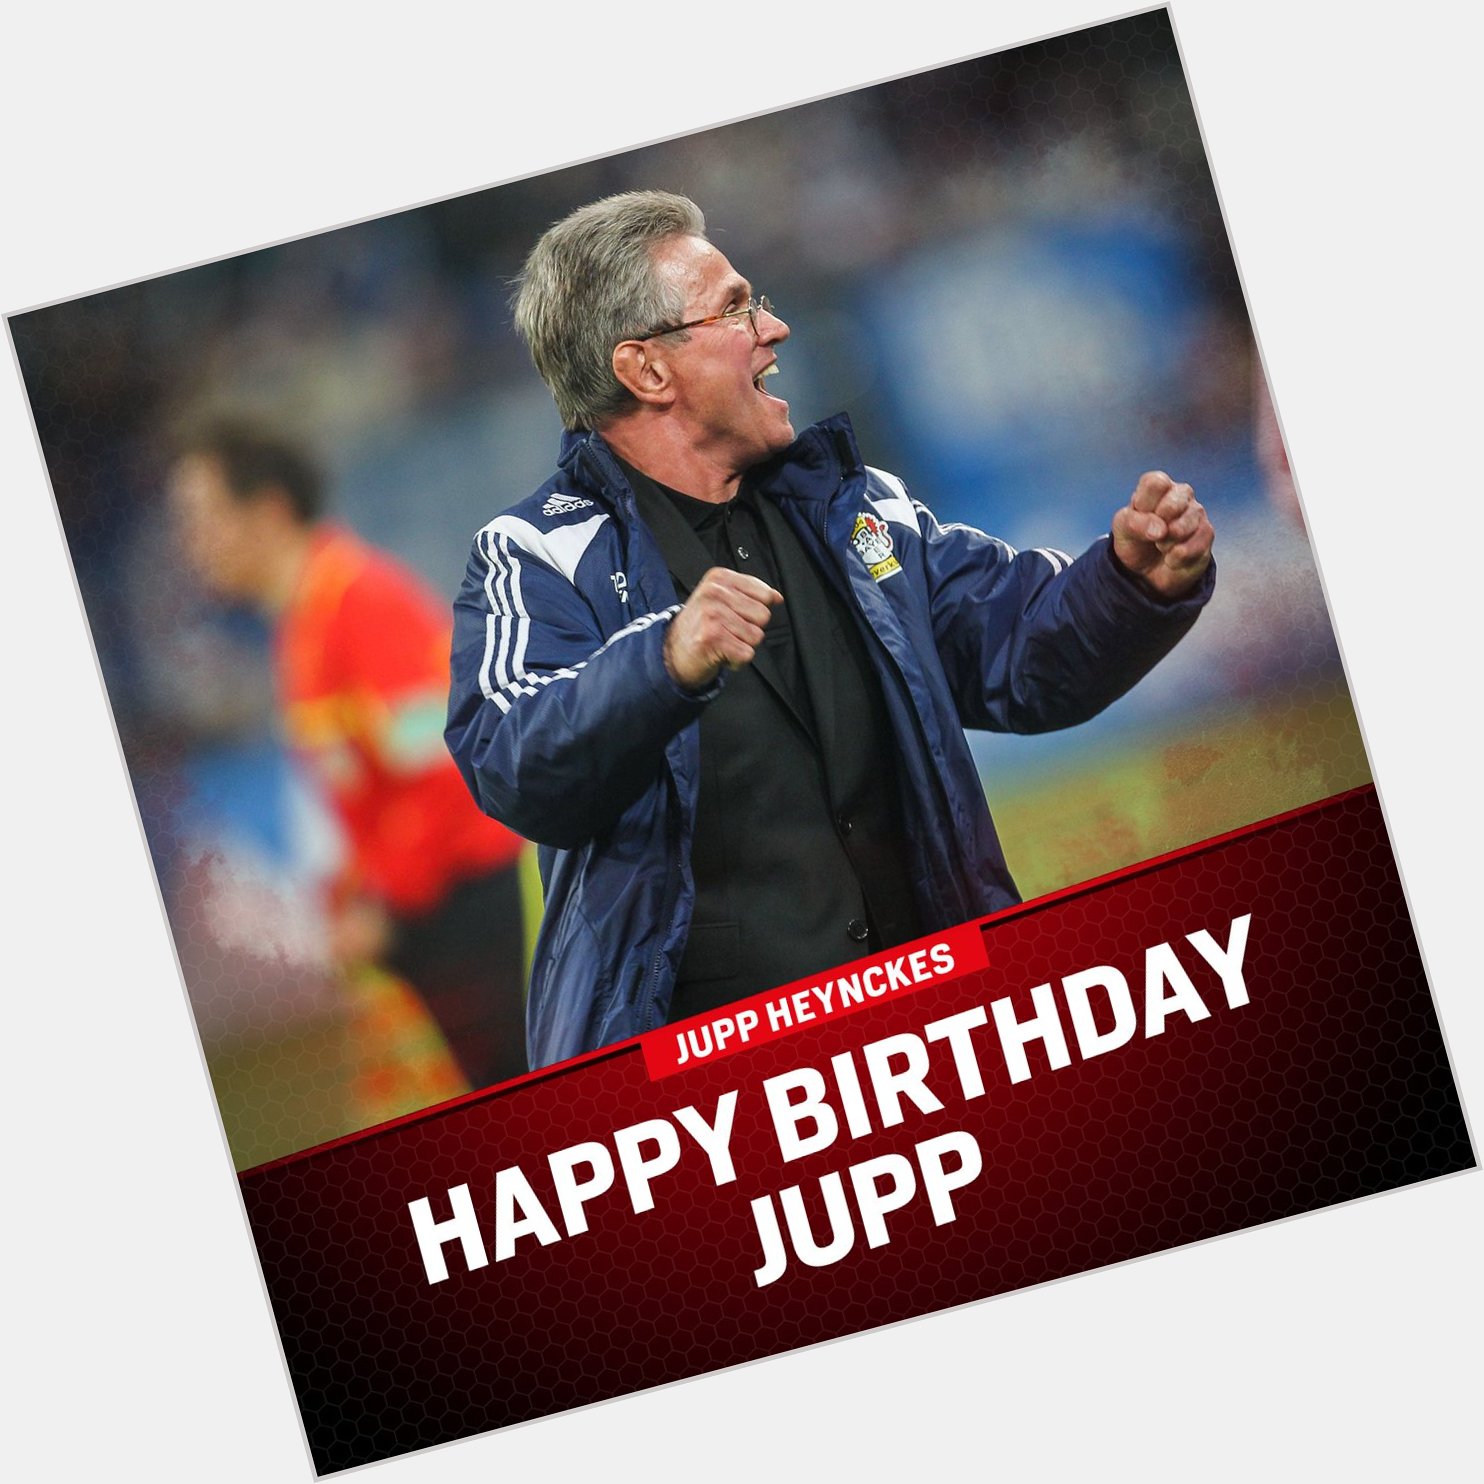 Happy Birthday, Jupp! Jupp feiert heute seinen 73. Geburtstag. Wir wünschen nur das Beste!   